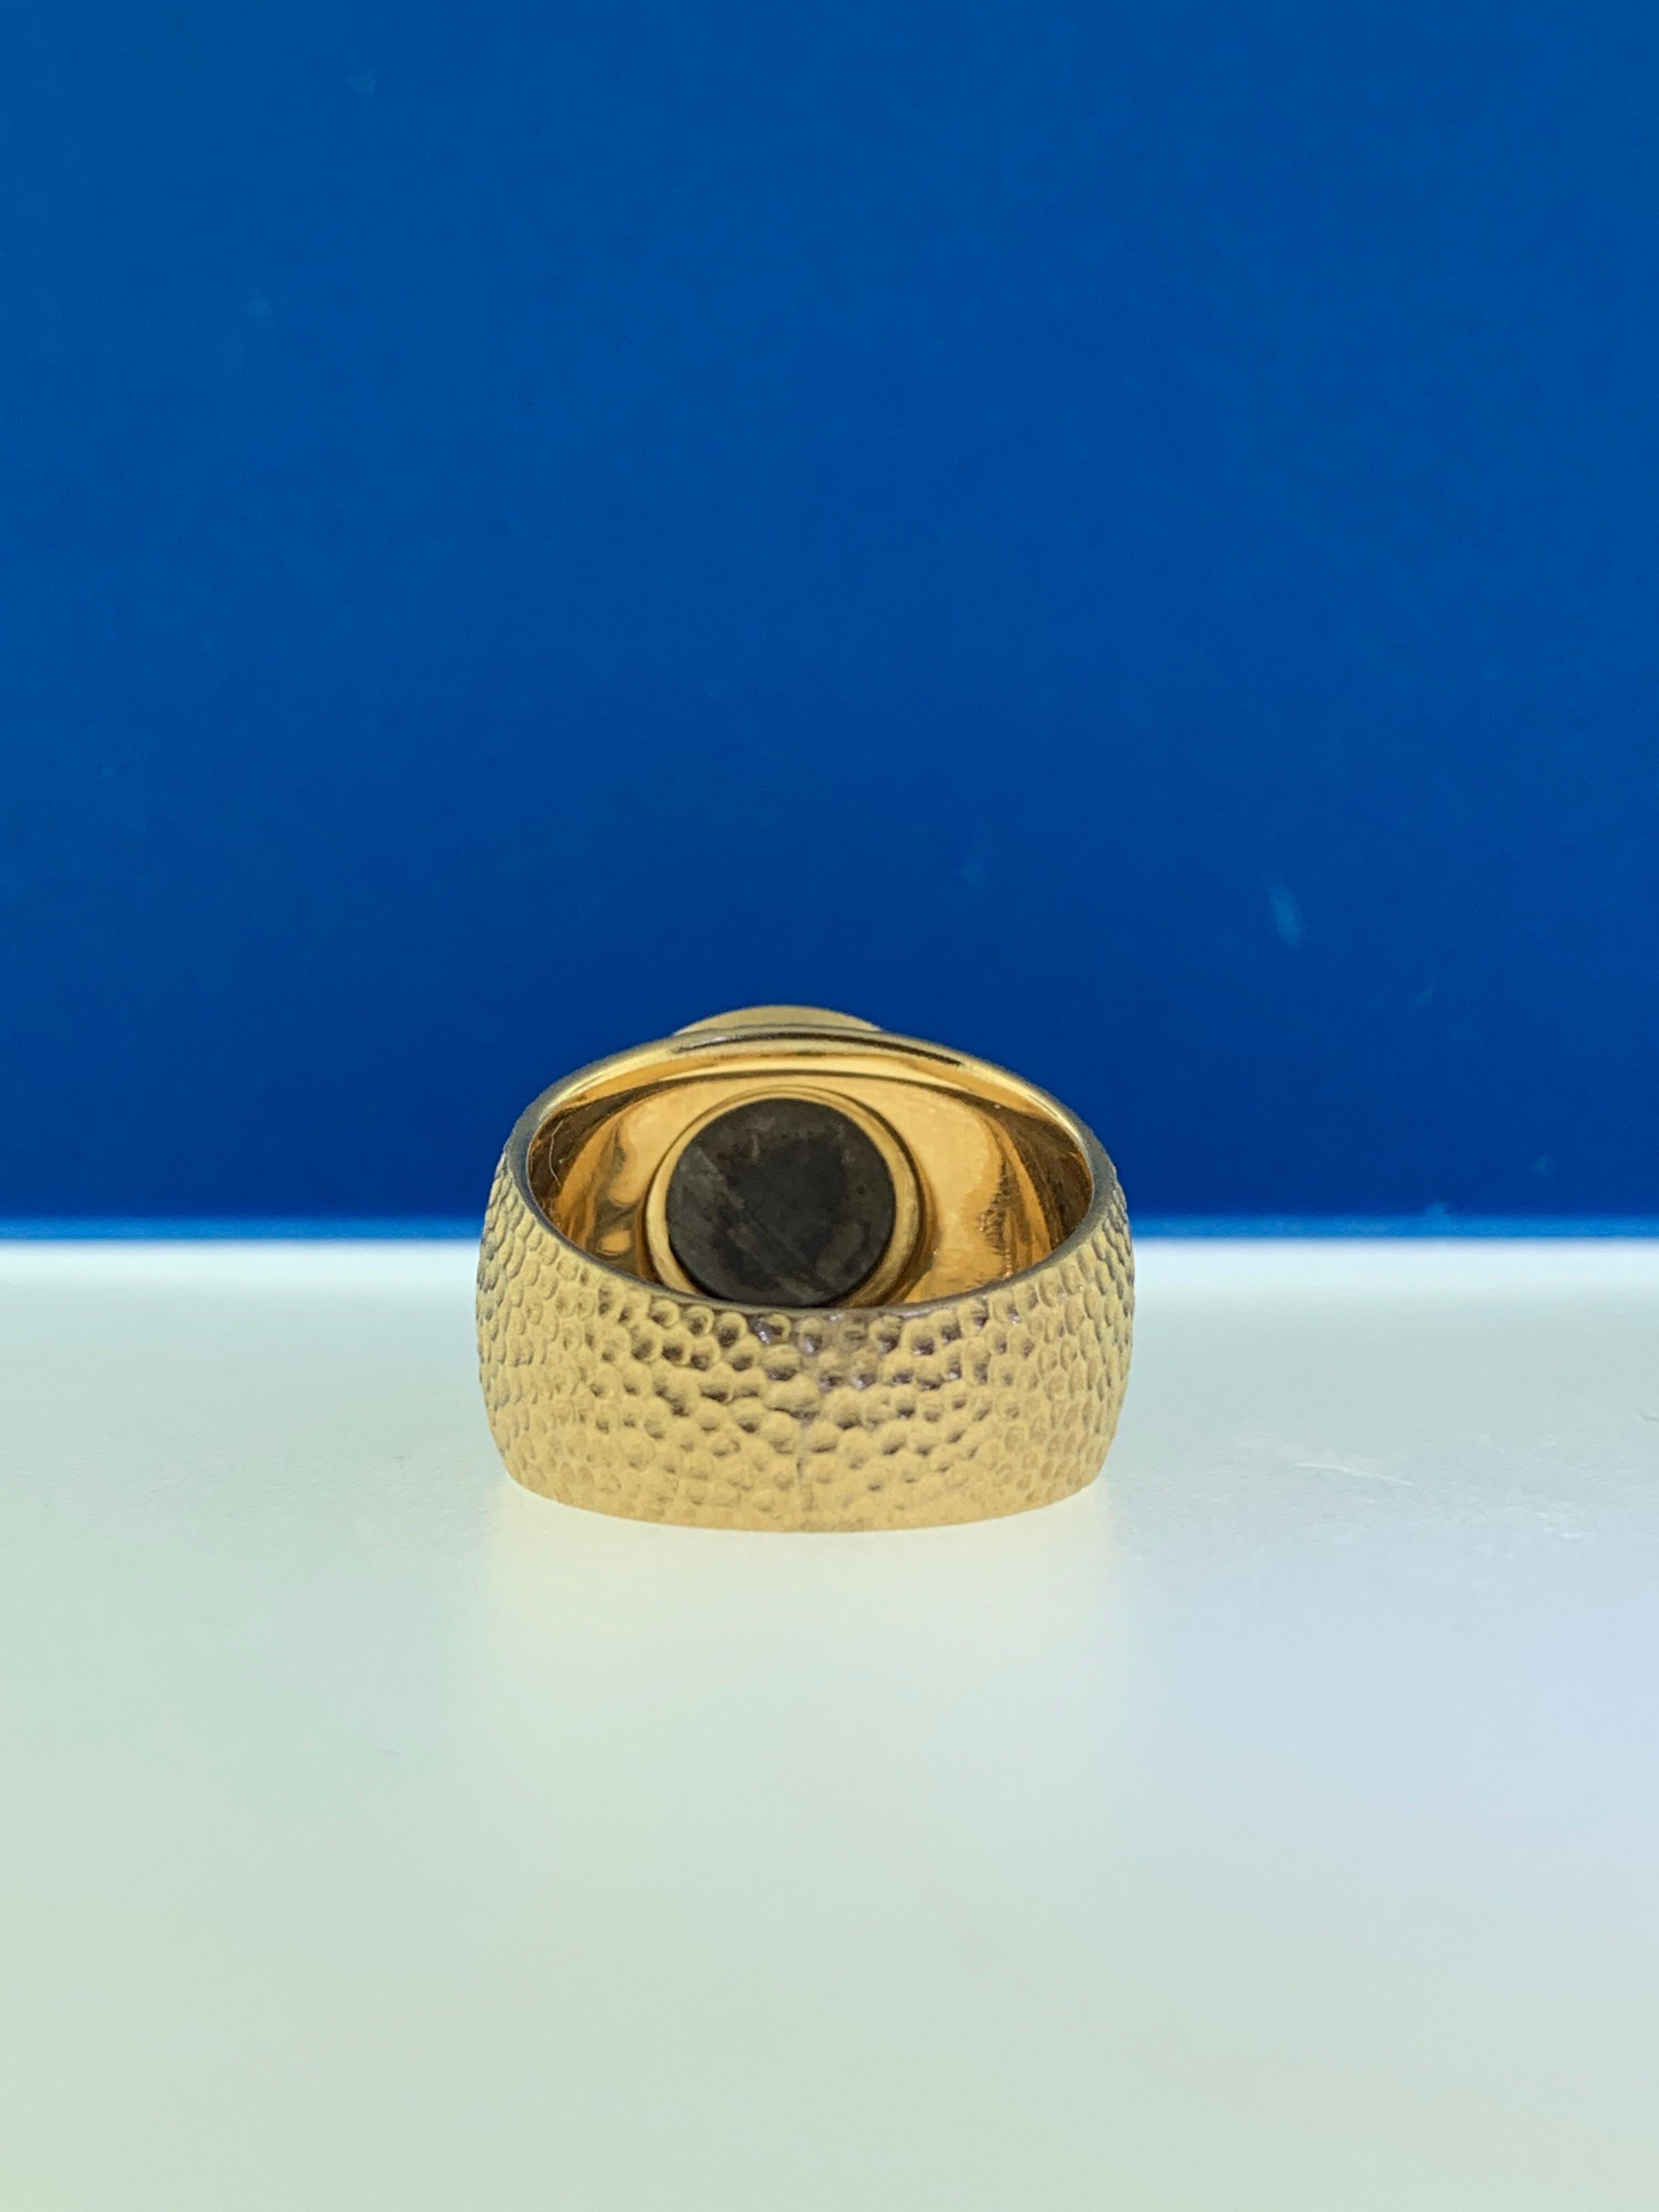 Women's 3.14 Carat Rose Cut Black Diamond Cocktail Ring